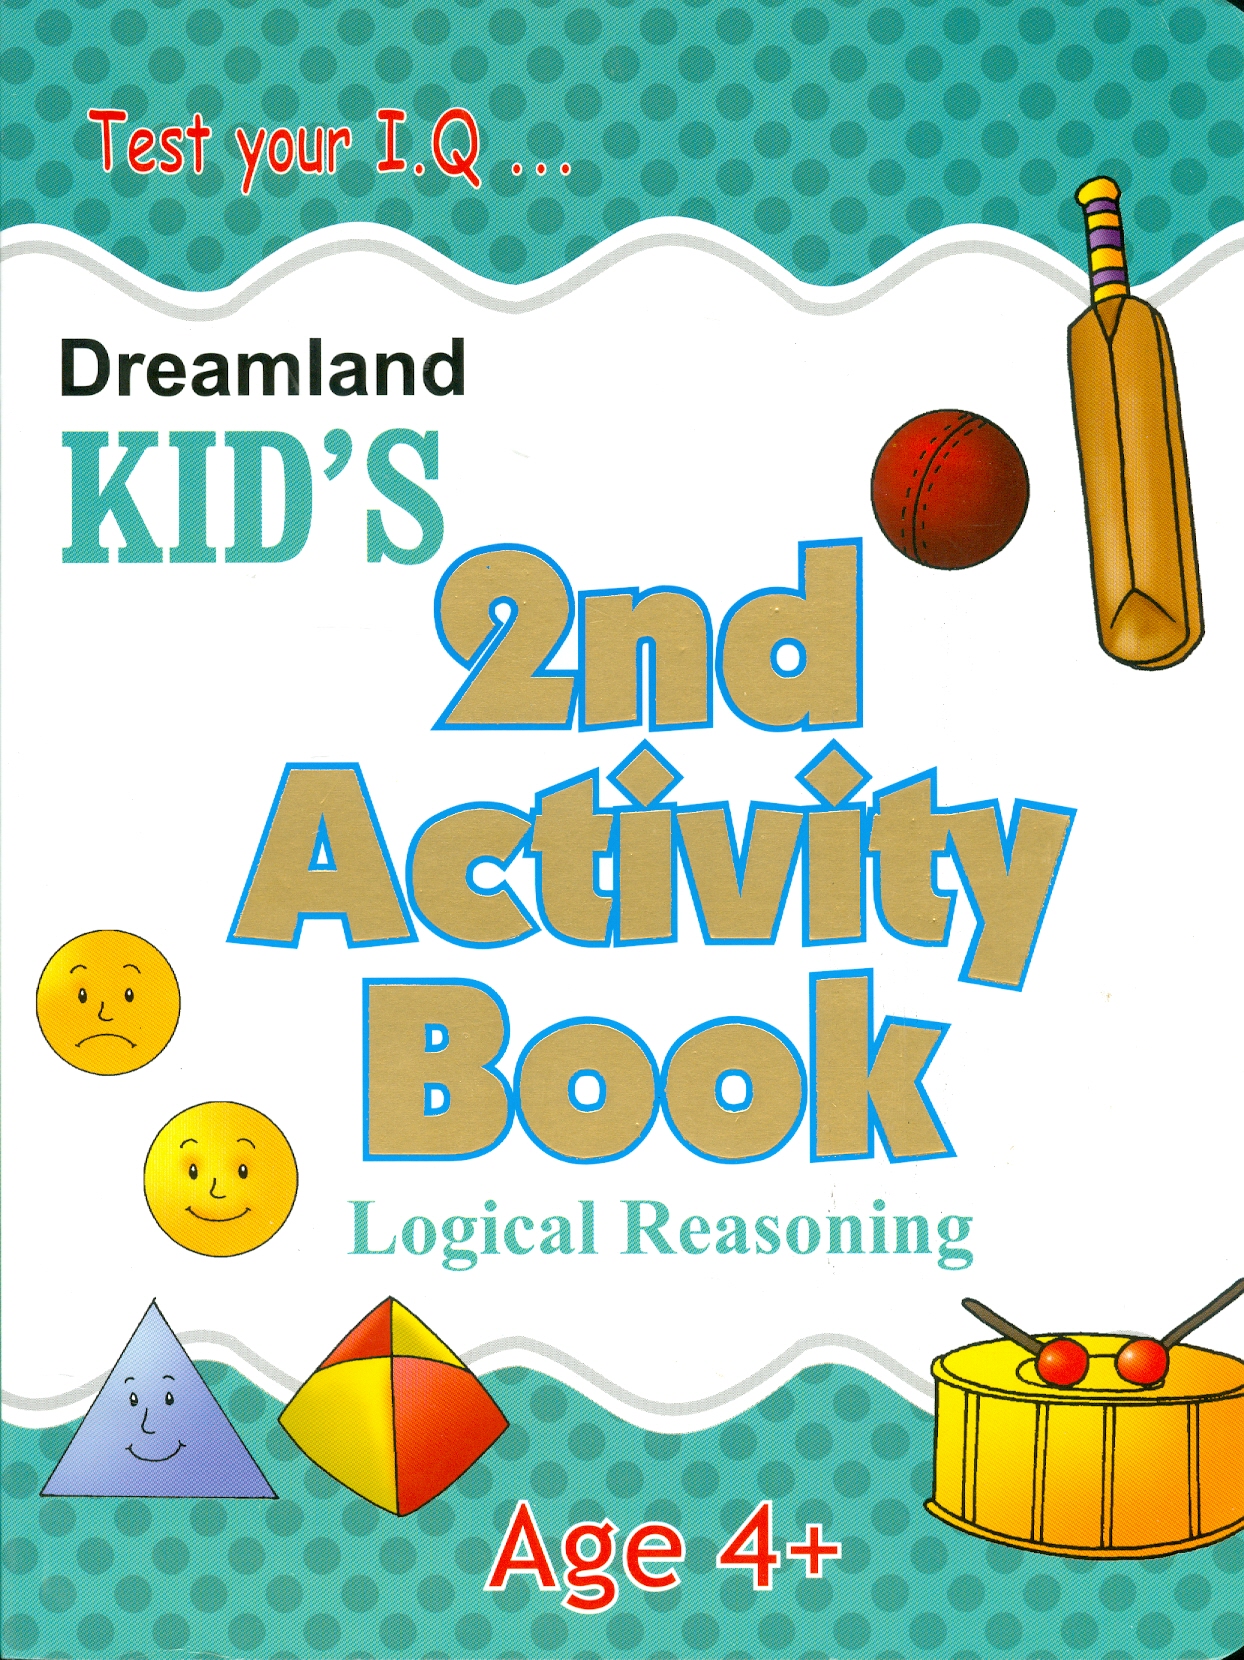 Kid's 2 nd Activity Book Logic Reasoning - Age 4+ (Các Hoạt Động Suy Luận Logic - Kiểm Tra Kiến Thức Thường Thức 4+)